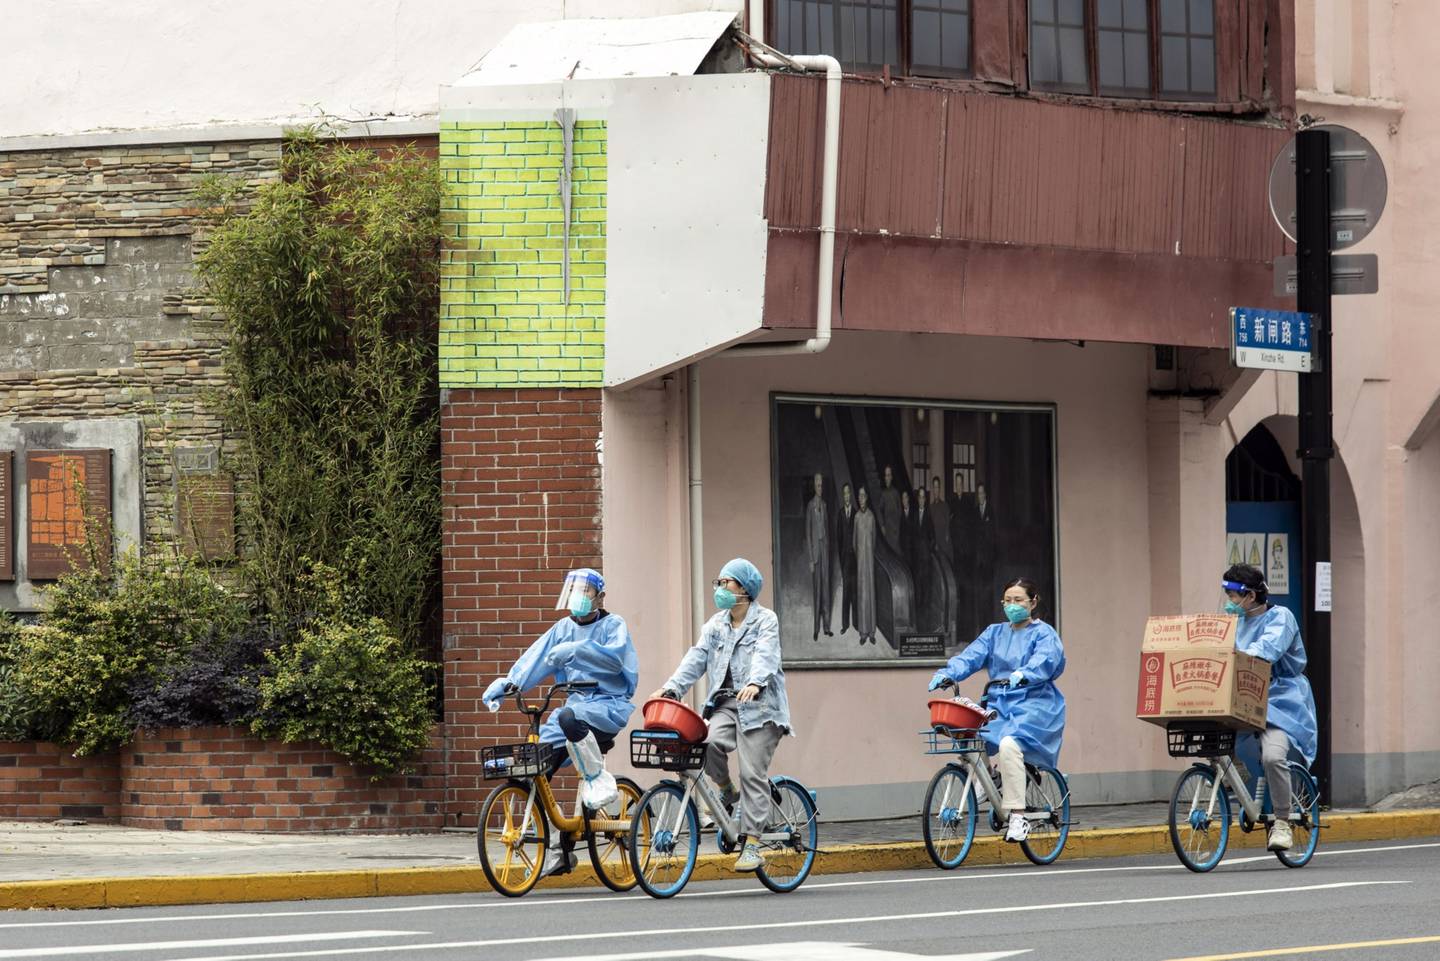 Trabajadores con equipamiento protector andan en bicicleta en Shanghái